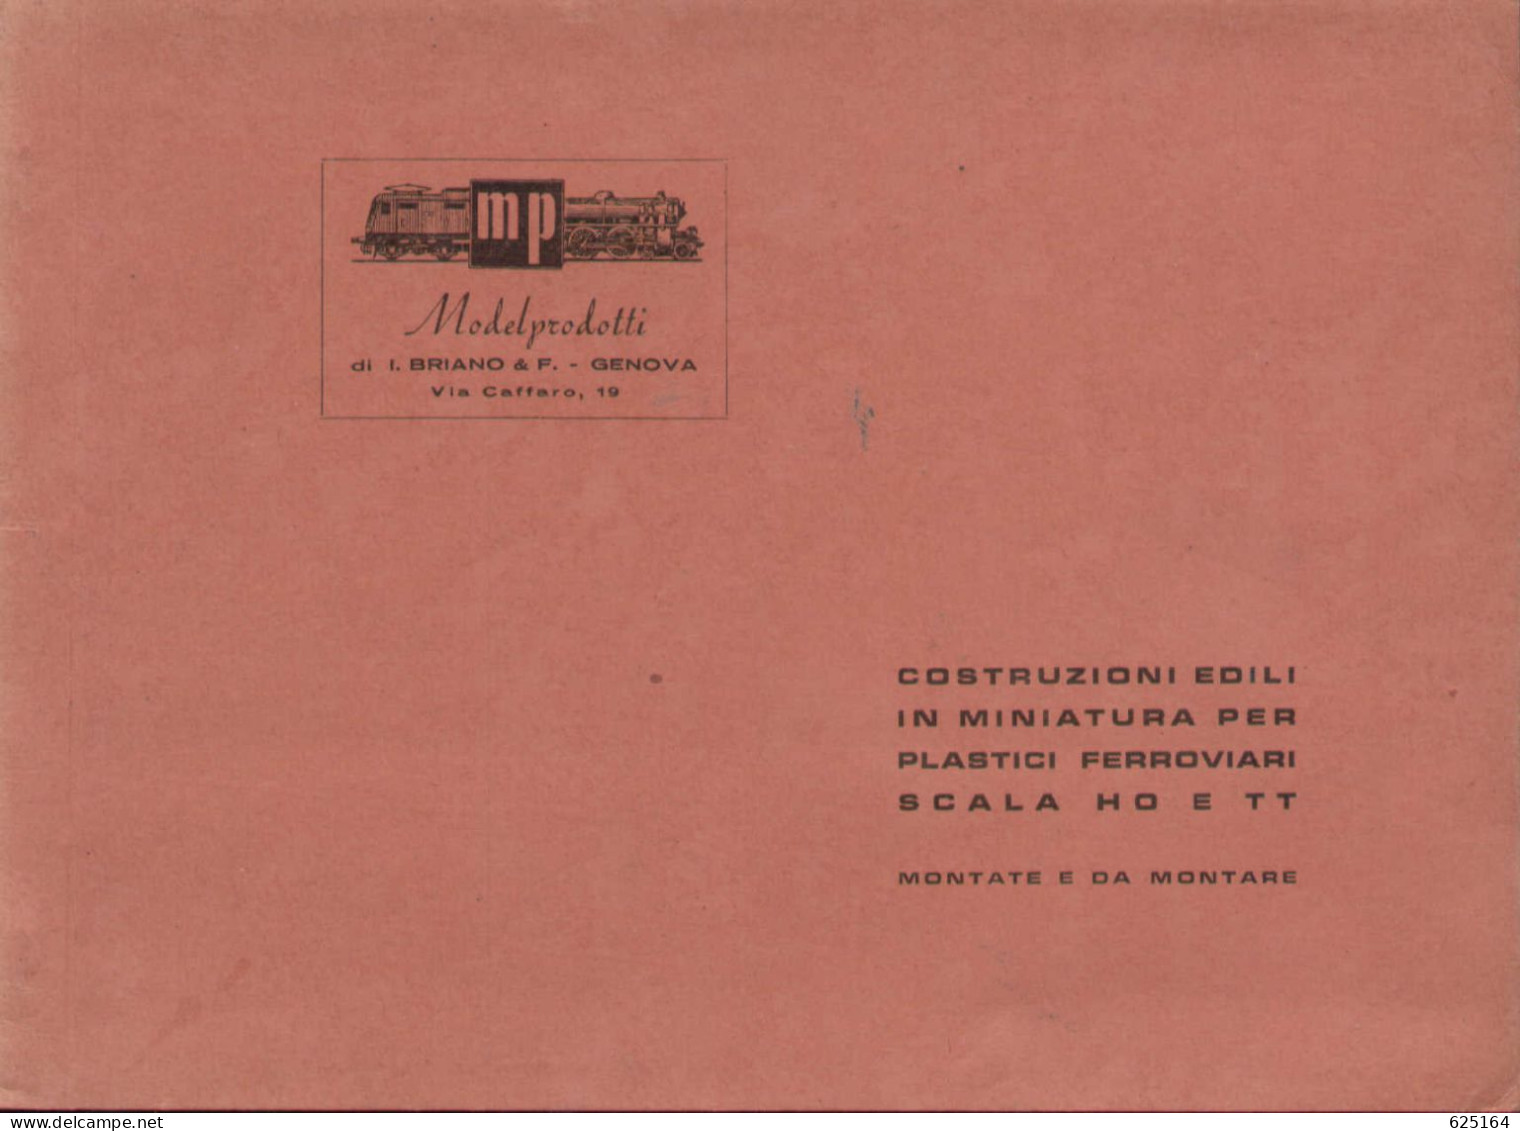 Catalogue MP ModelProdotti 1955? Ed. Italo Briano Genova Accessori HO  - En Italien - Zonder Classificatie